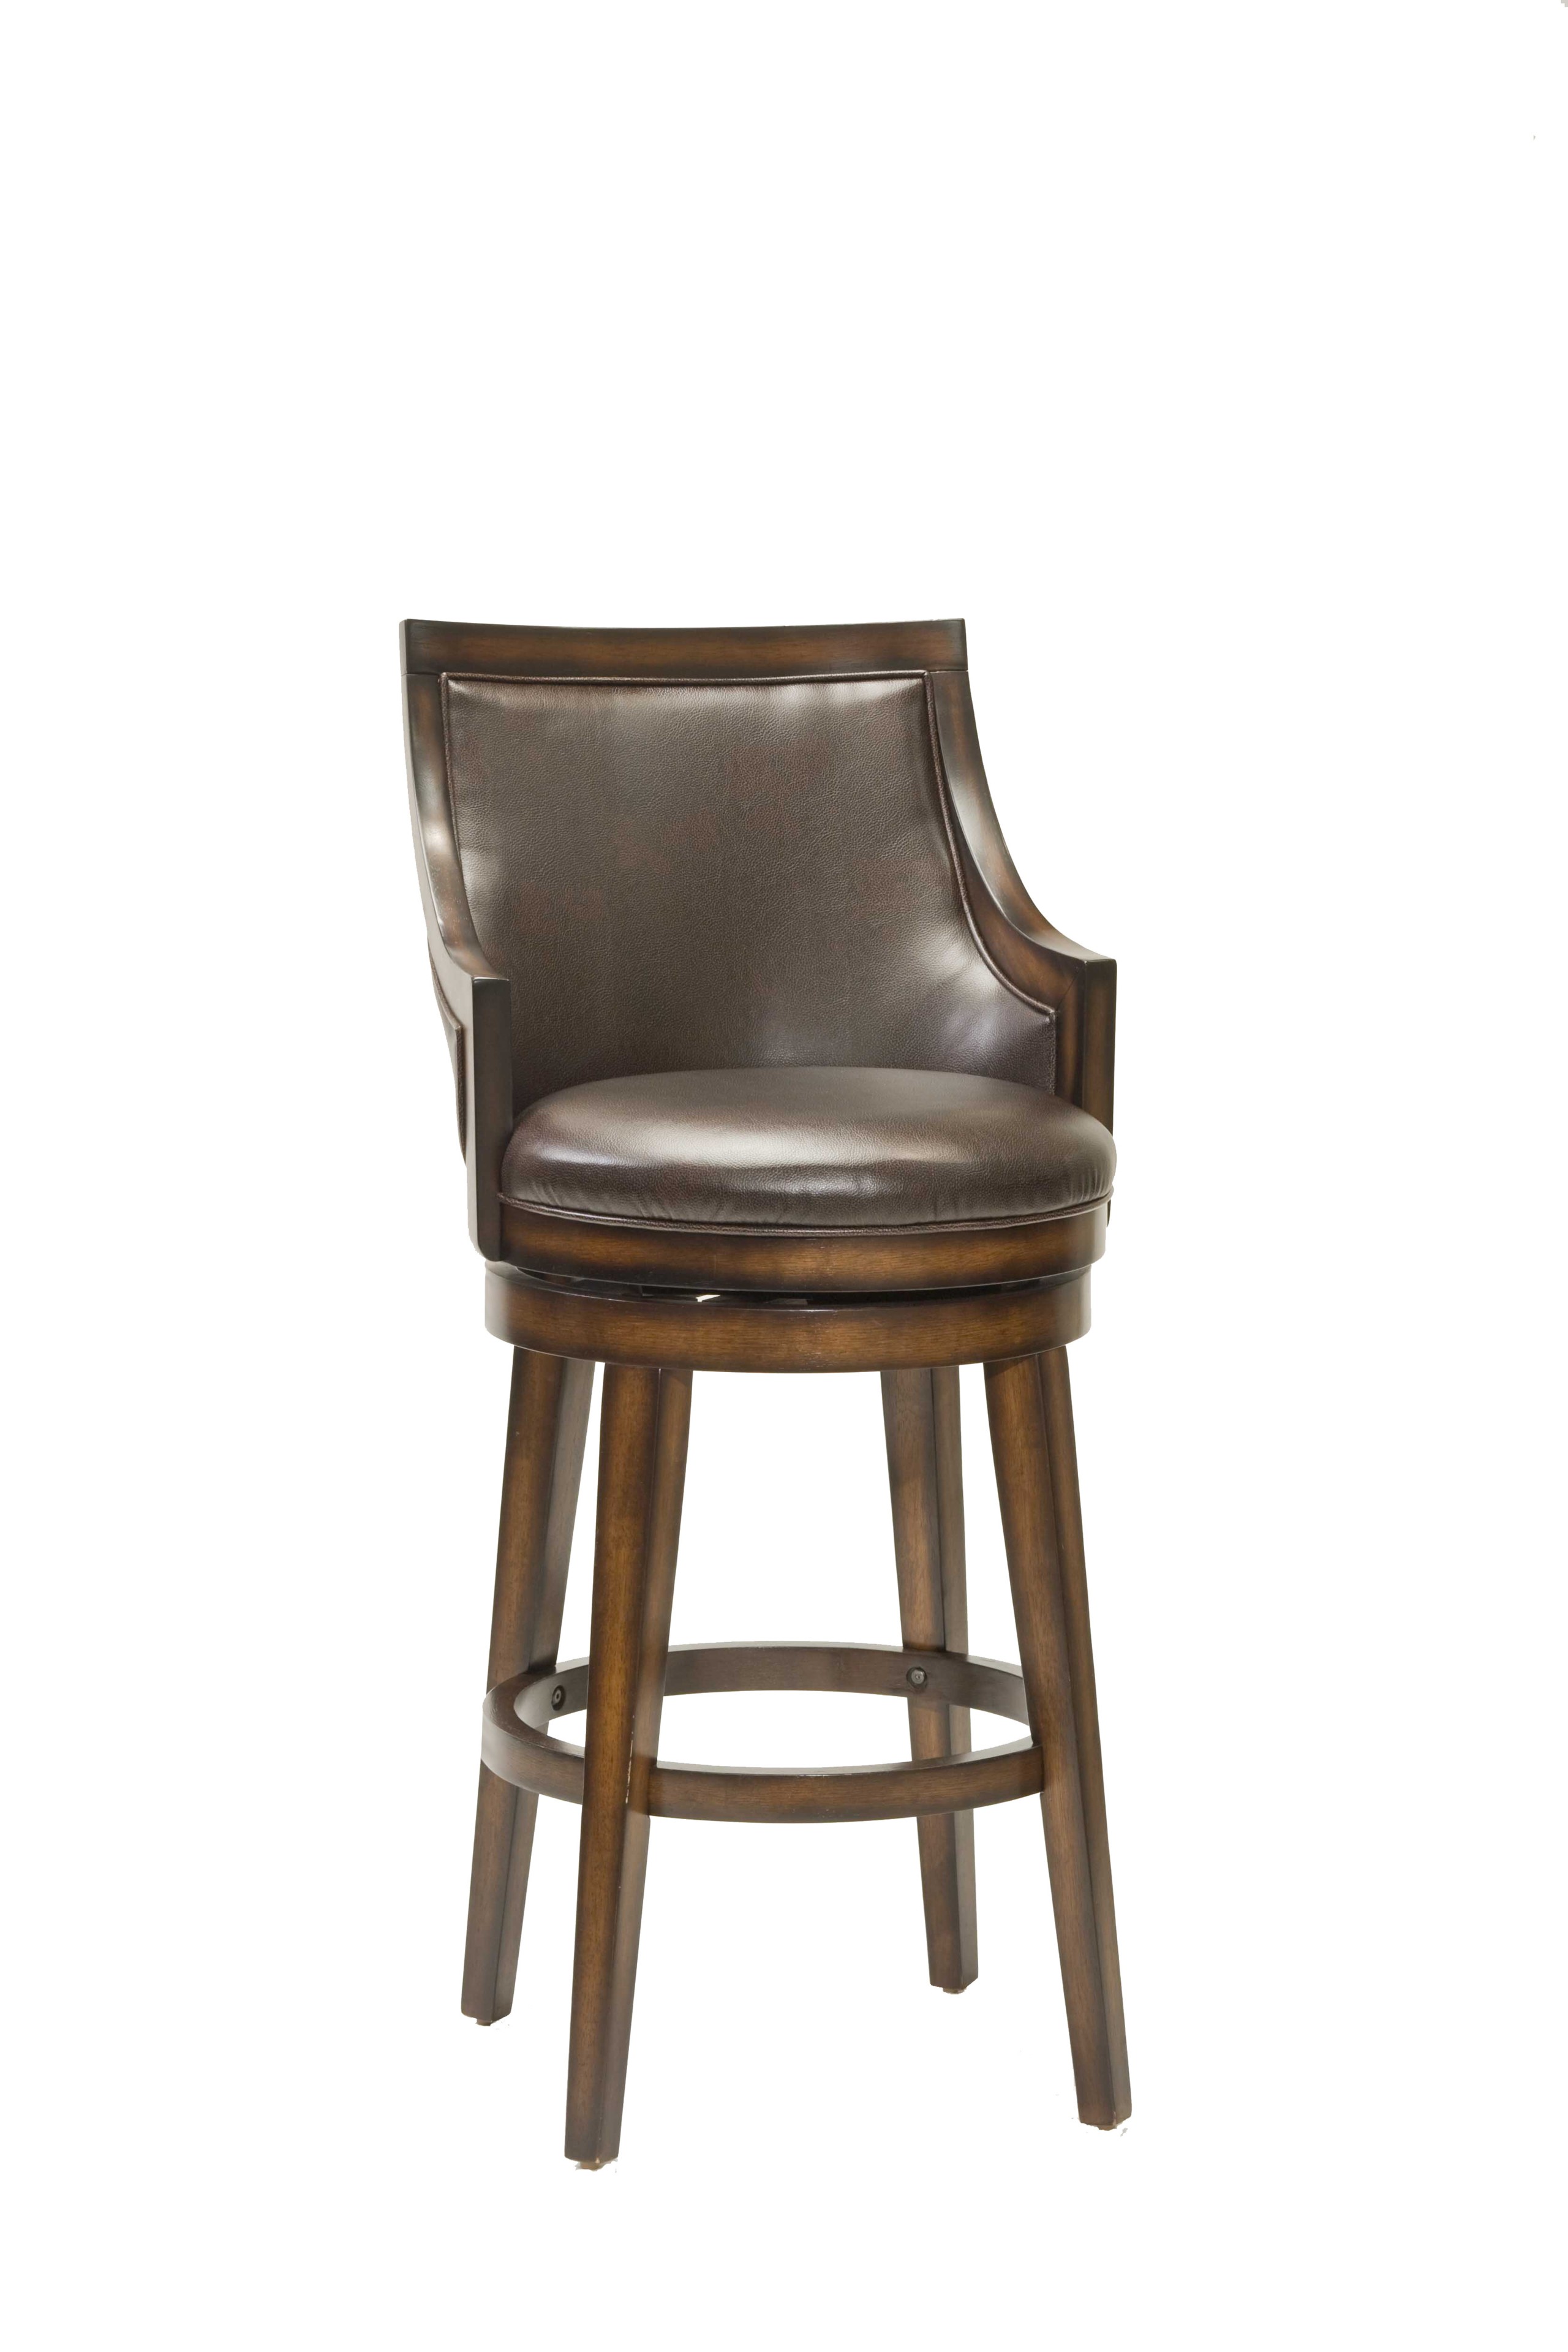 Upholstered arm swivel bar stool